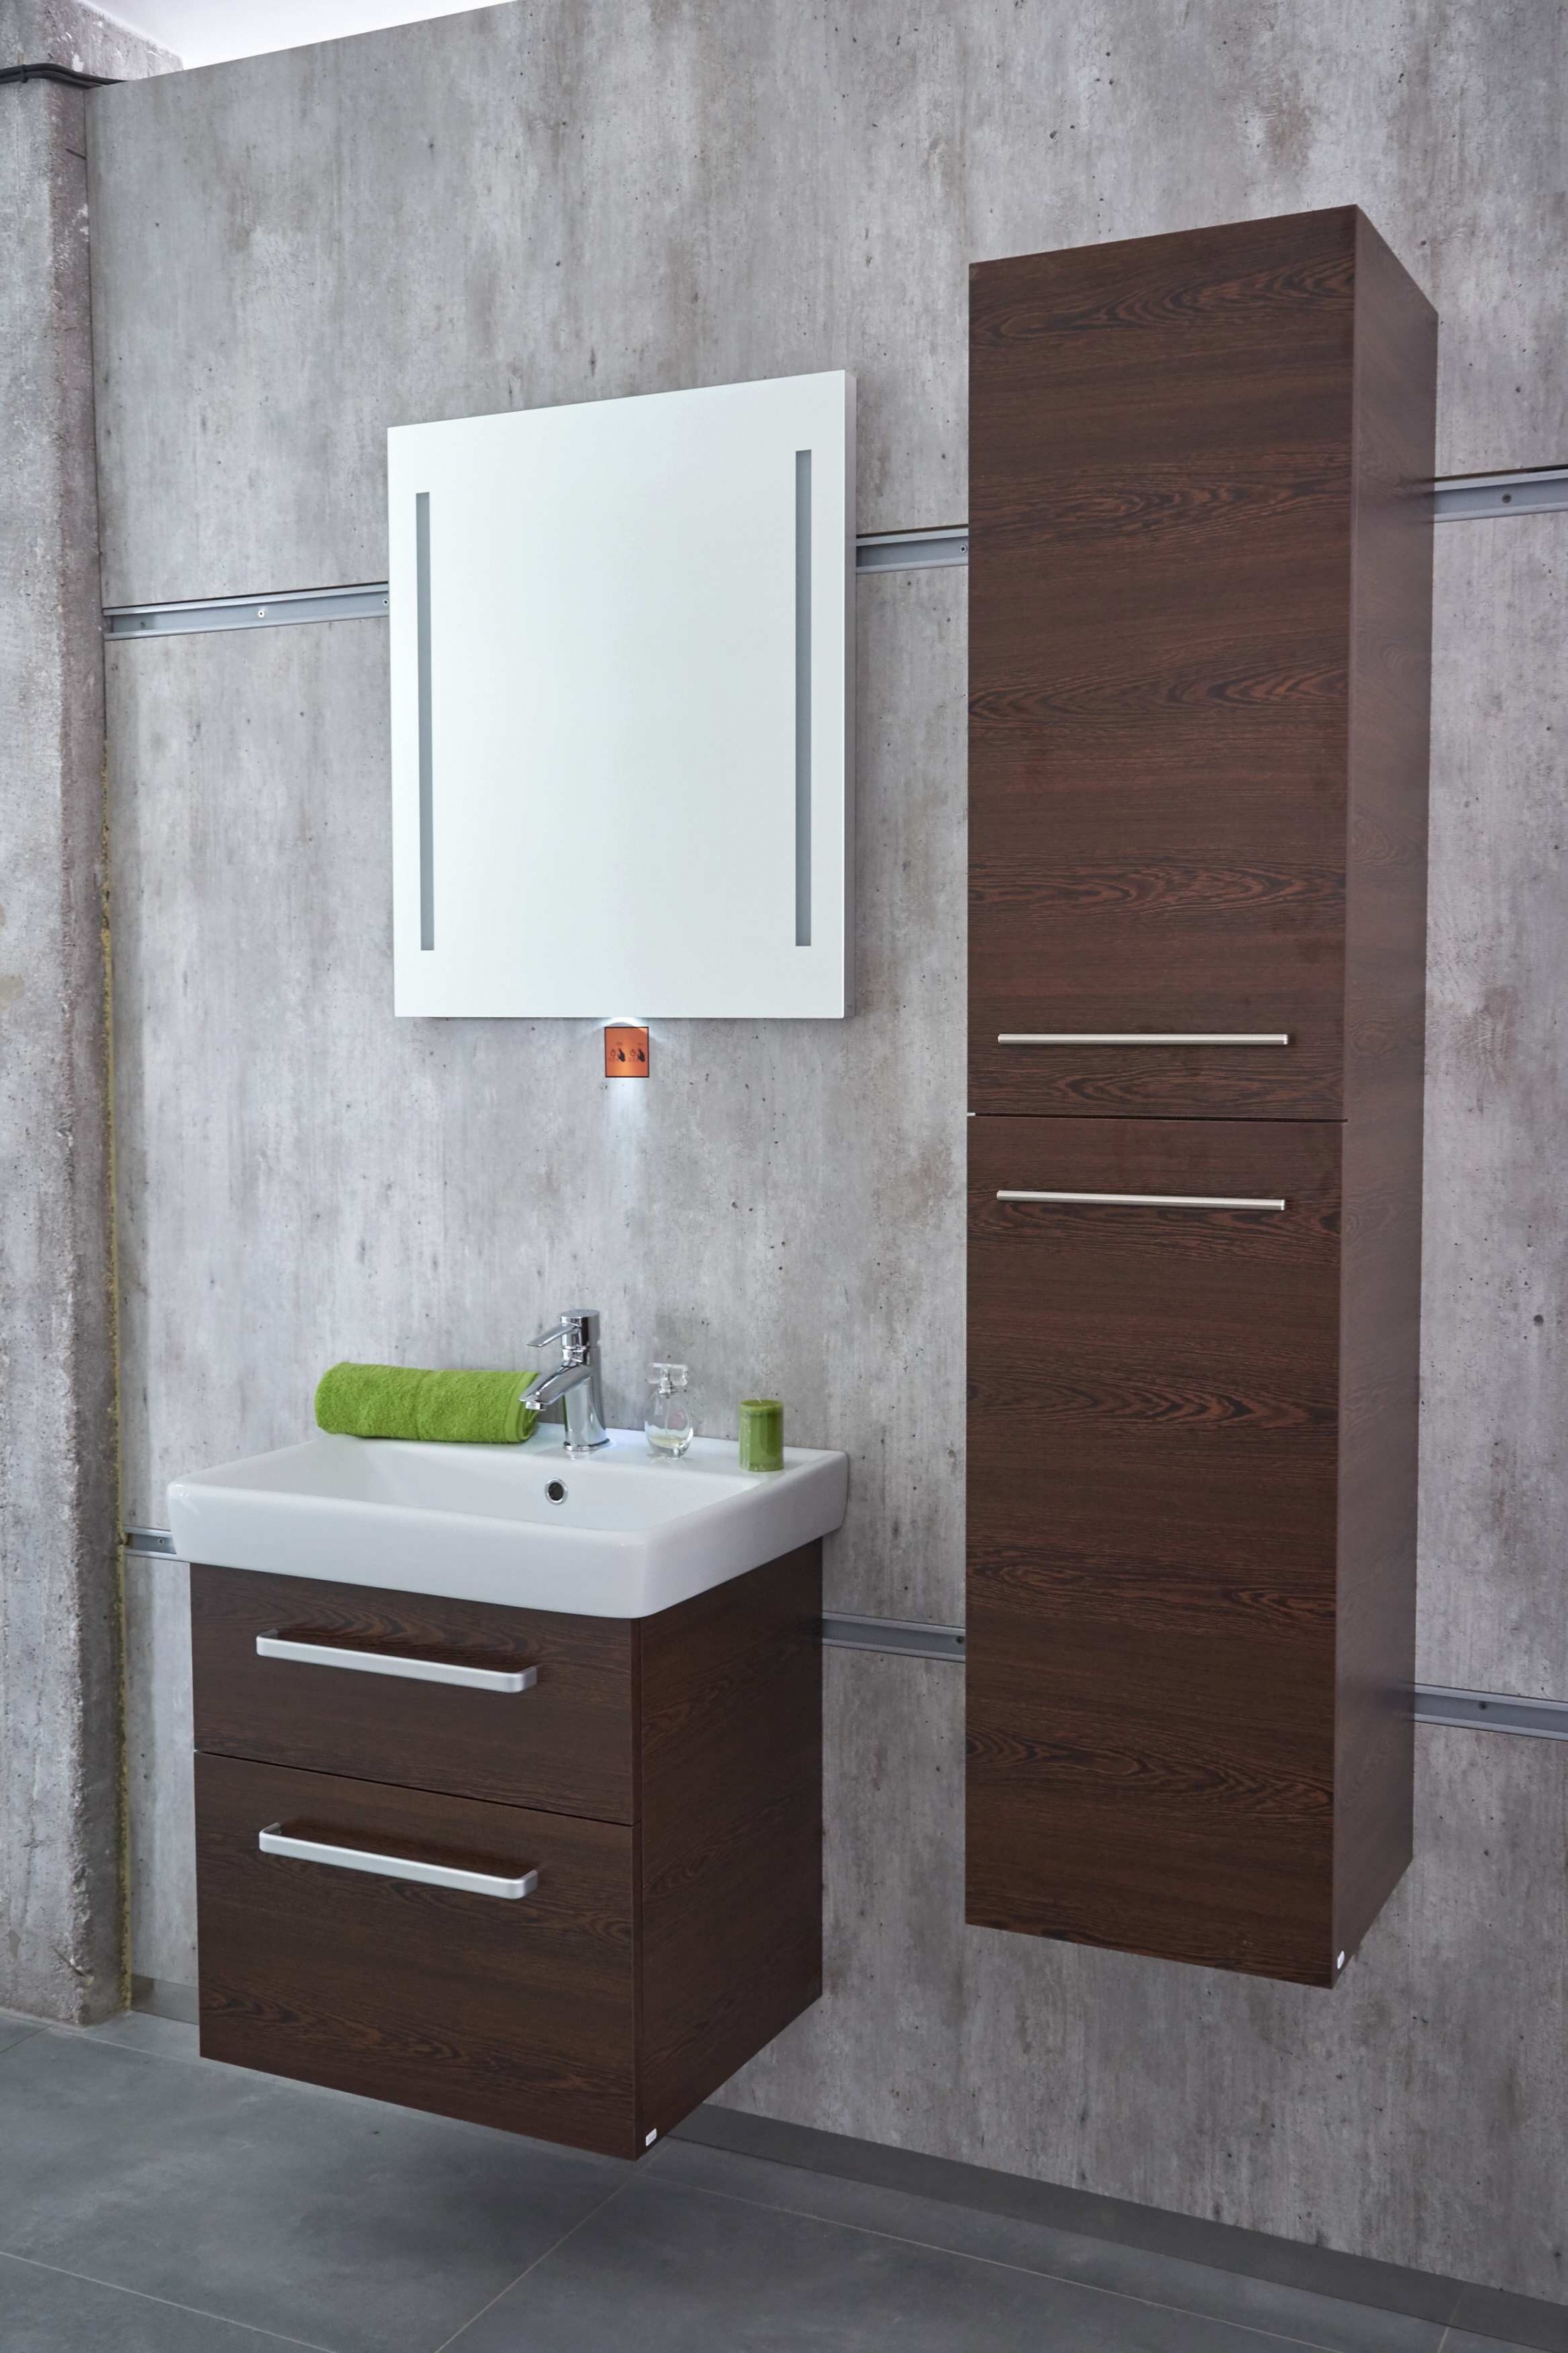 West Elm Couch Ikea Bedroom Furniture Wallpaper Design - Bathroom , HD Wallpaper & Backgrounds